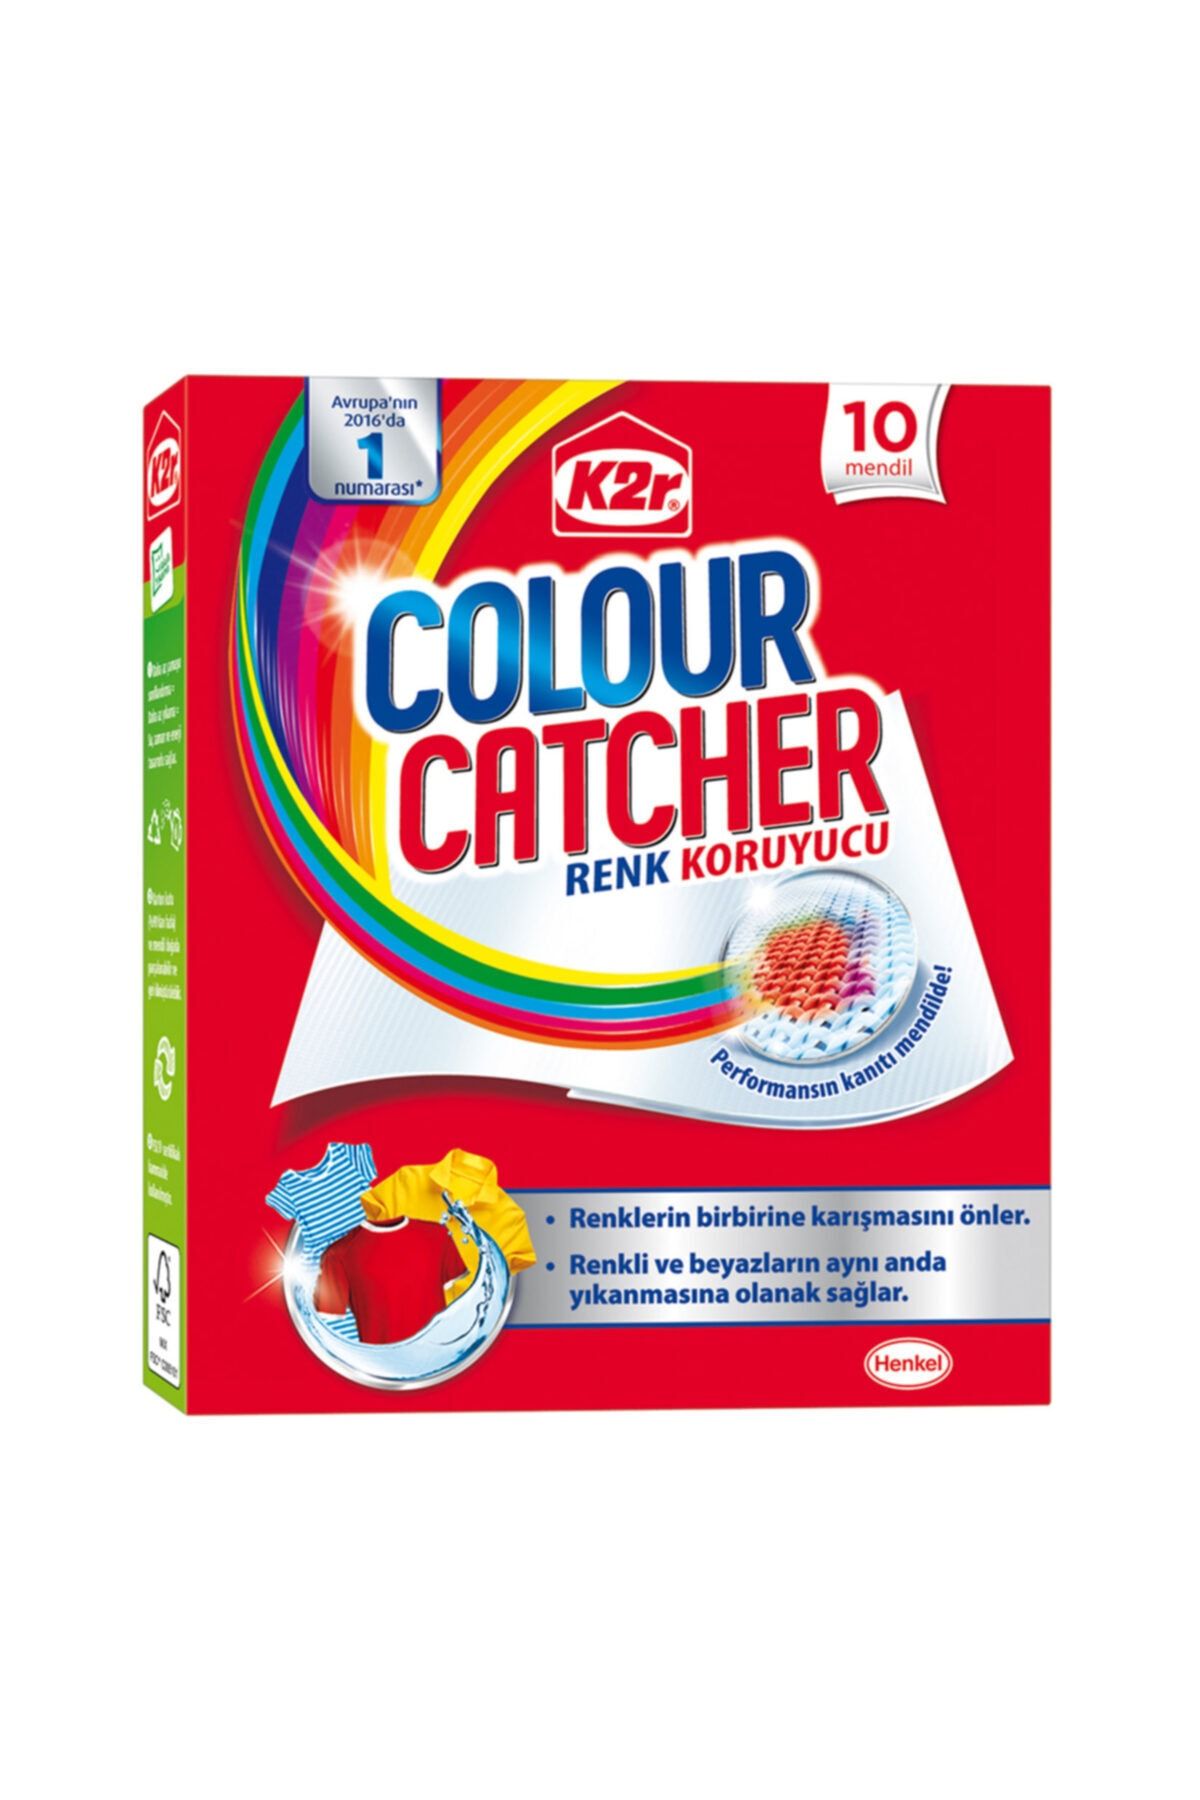 K2R Colour Catcher Renk Koruyucu Mendil